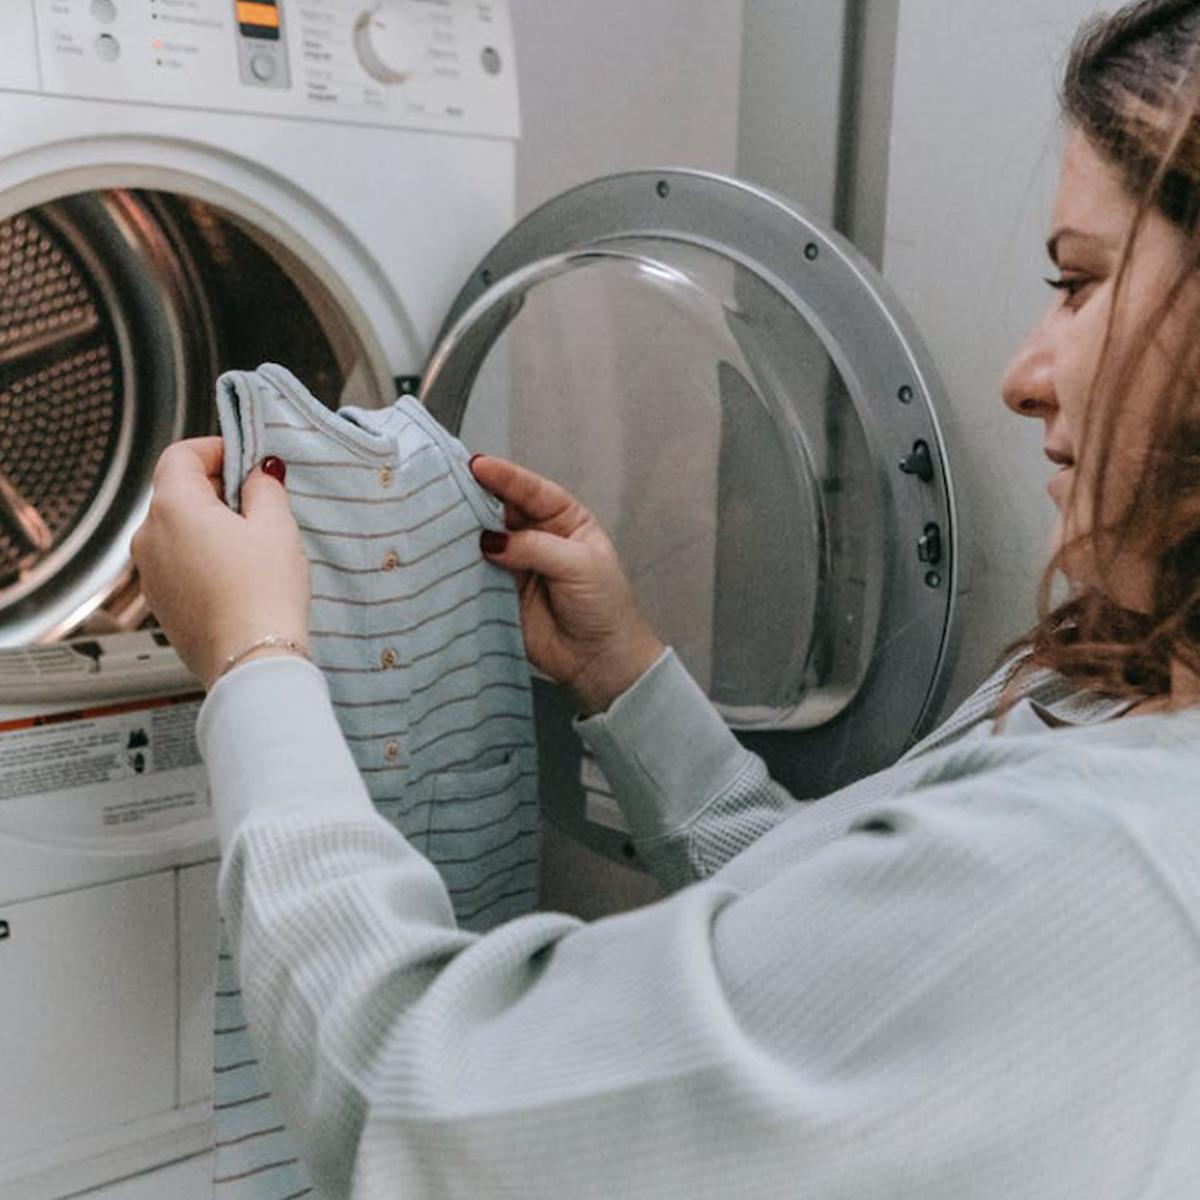 caseros el hogar | Cómo lavar la ropa de un recién nacido sin perjudicar su | RESPUESTAS | MAG.